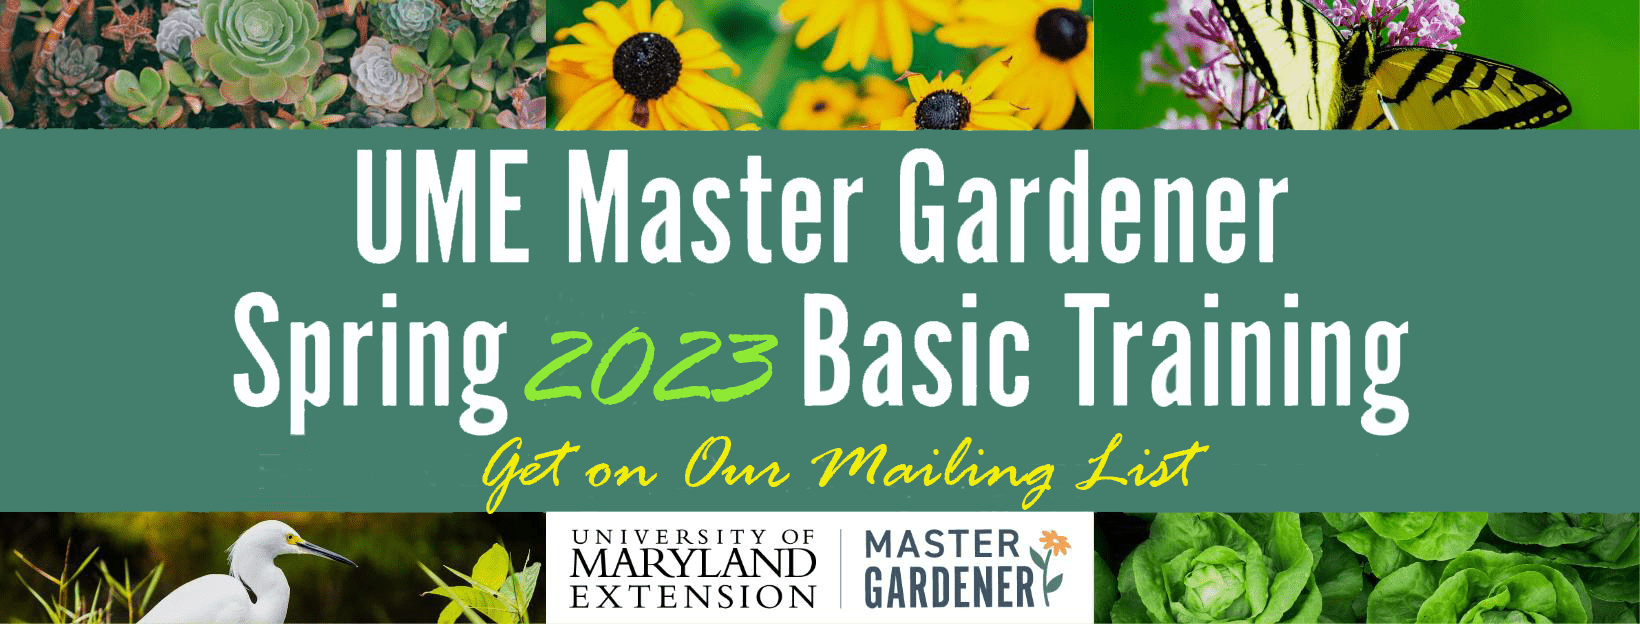 UME Master Gardener - Spring 2023